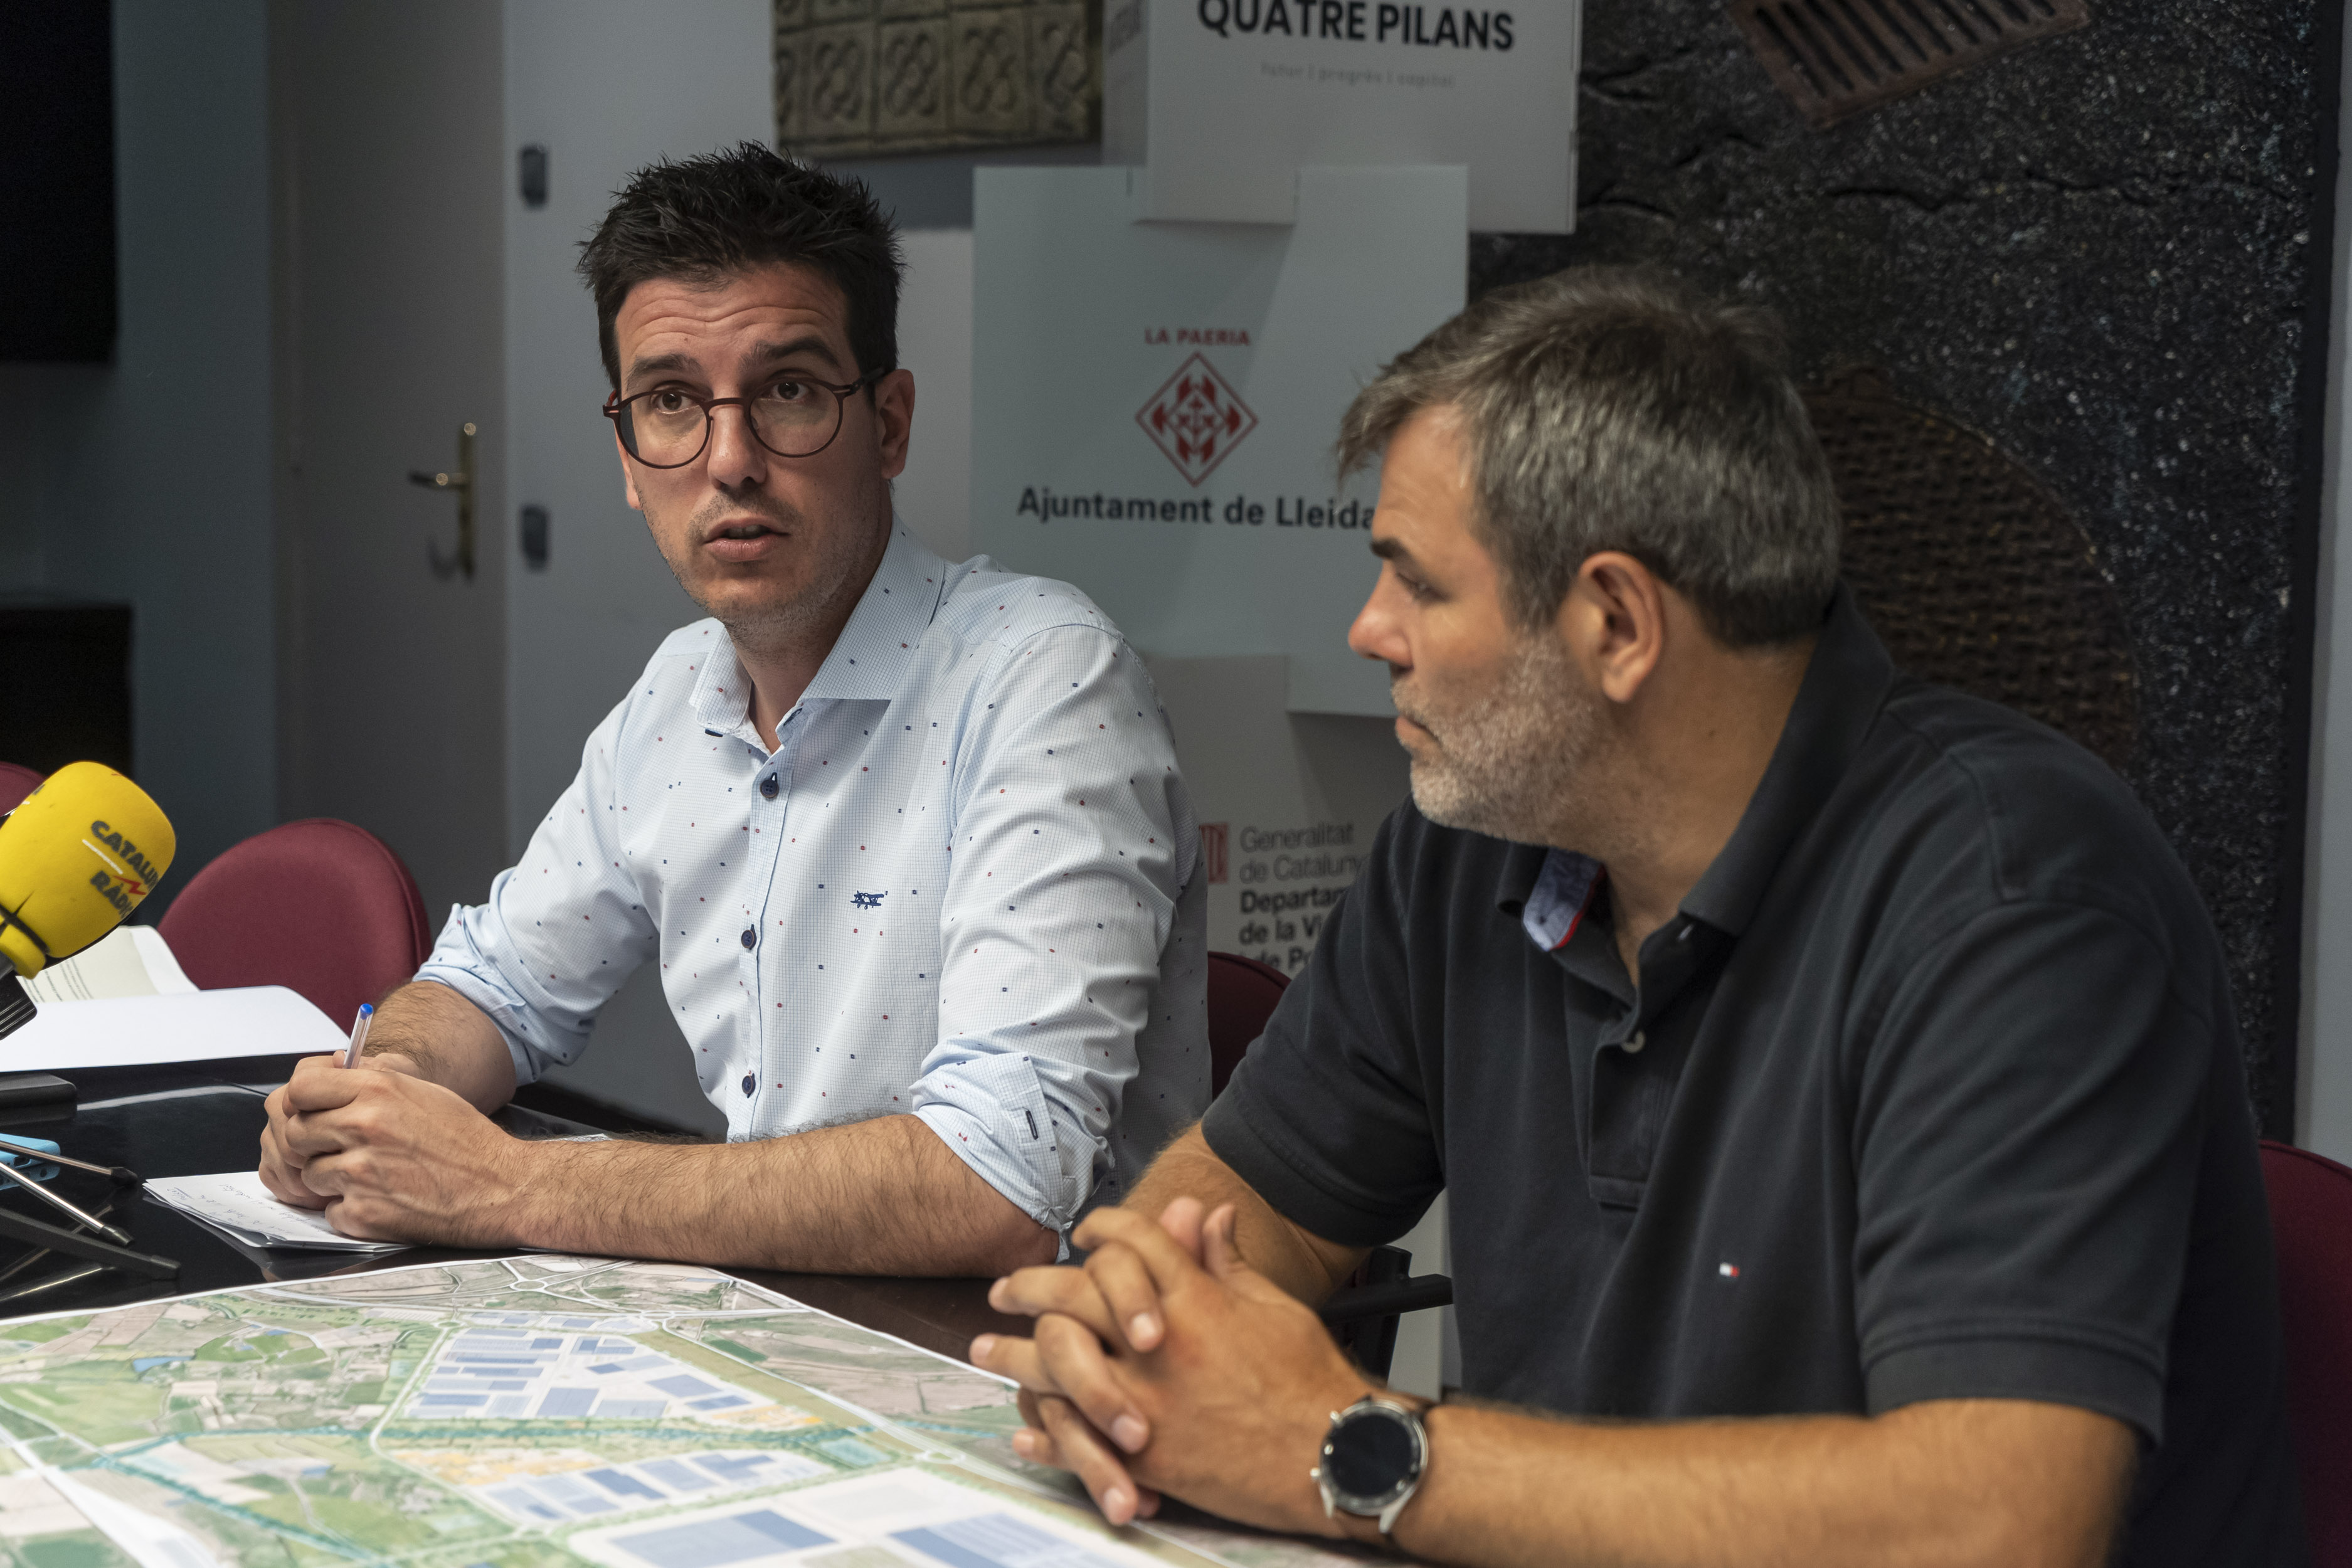 Antoni Postius i David Melè, en la roda de premsa sobre les al·legacions de Torreblanca-Quatre Pilans. 